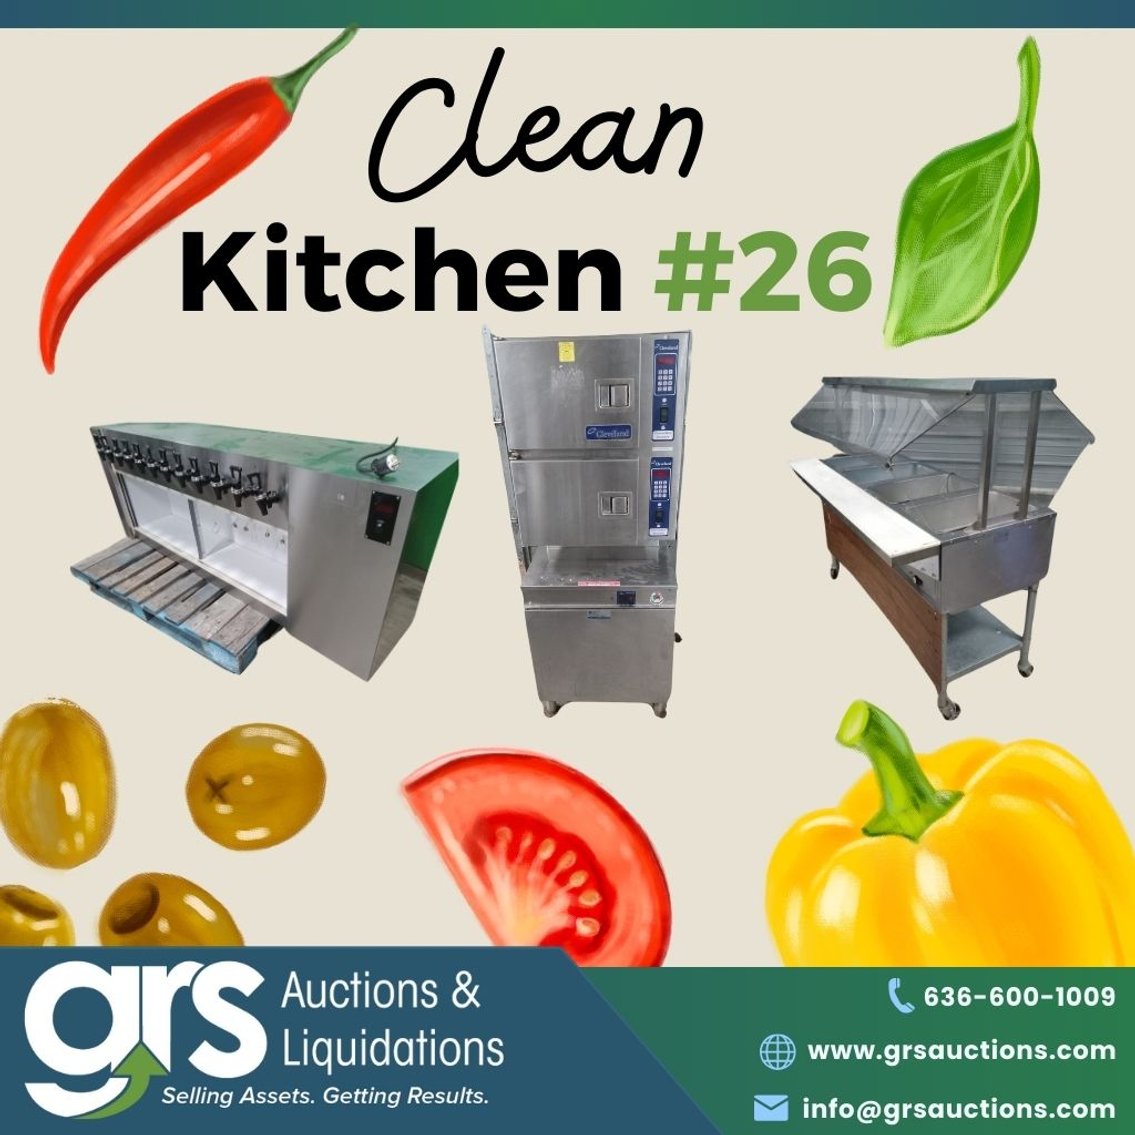 Clean Kitchen #26